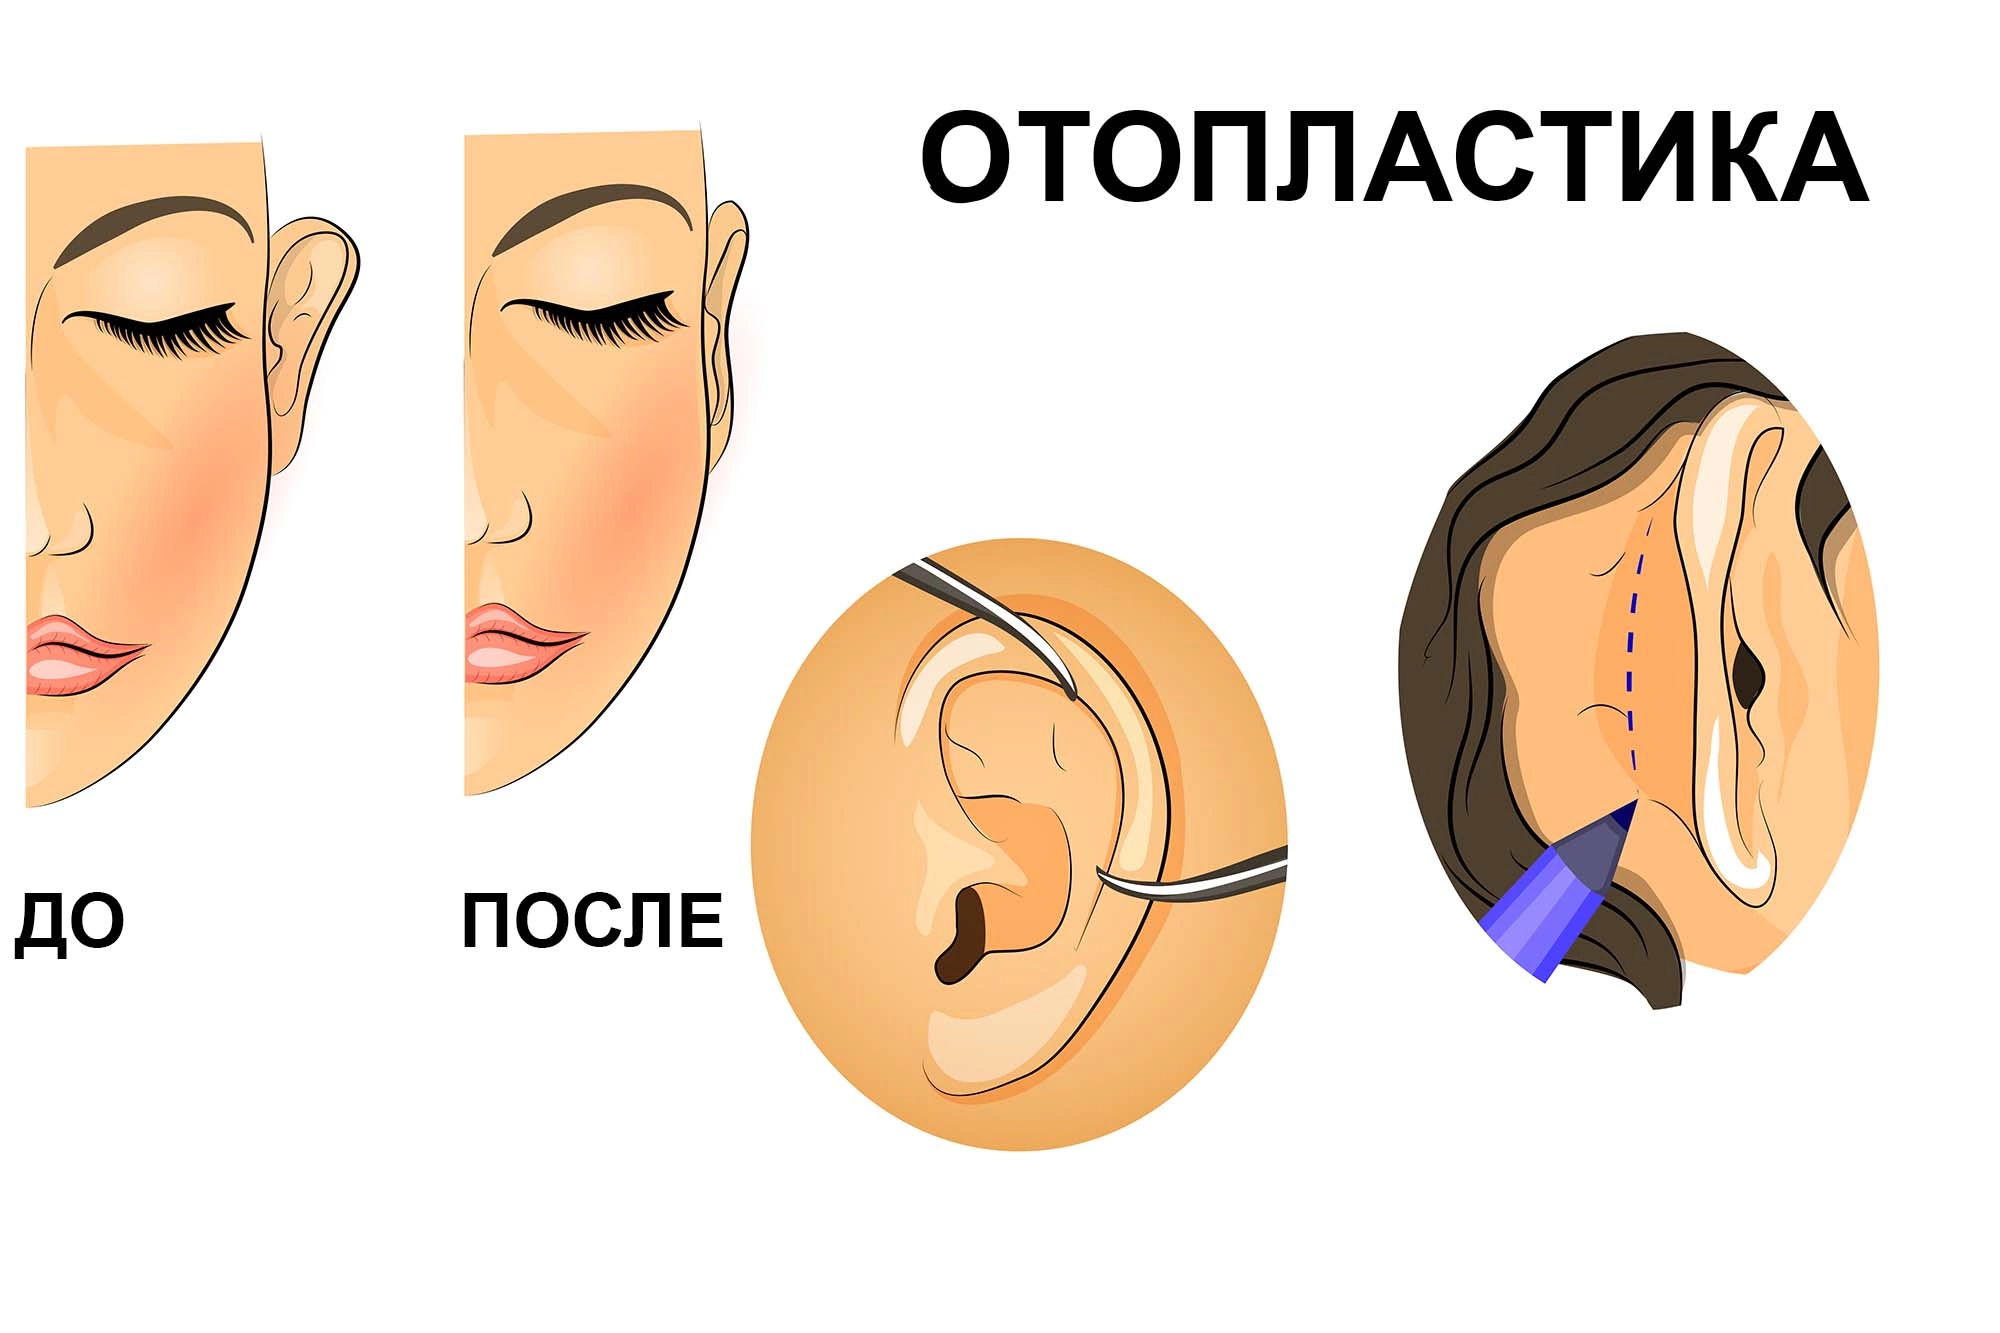 Какие существуют виды лечения онемения уха?